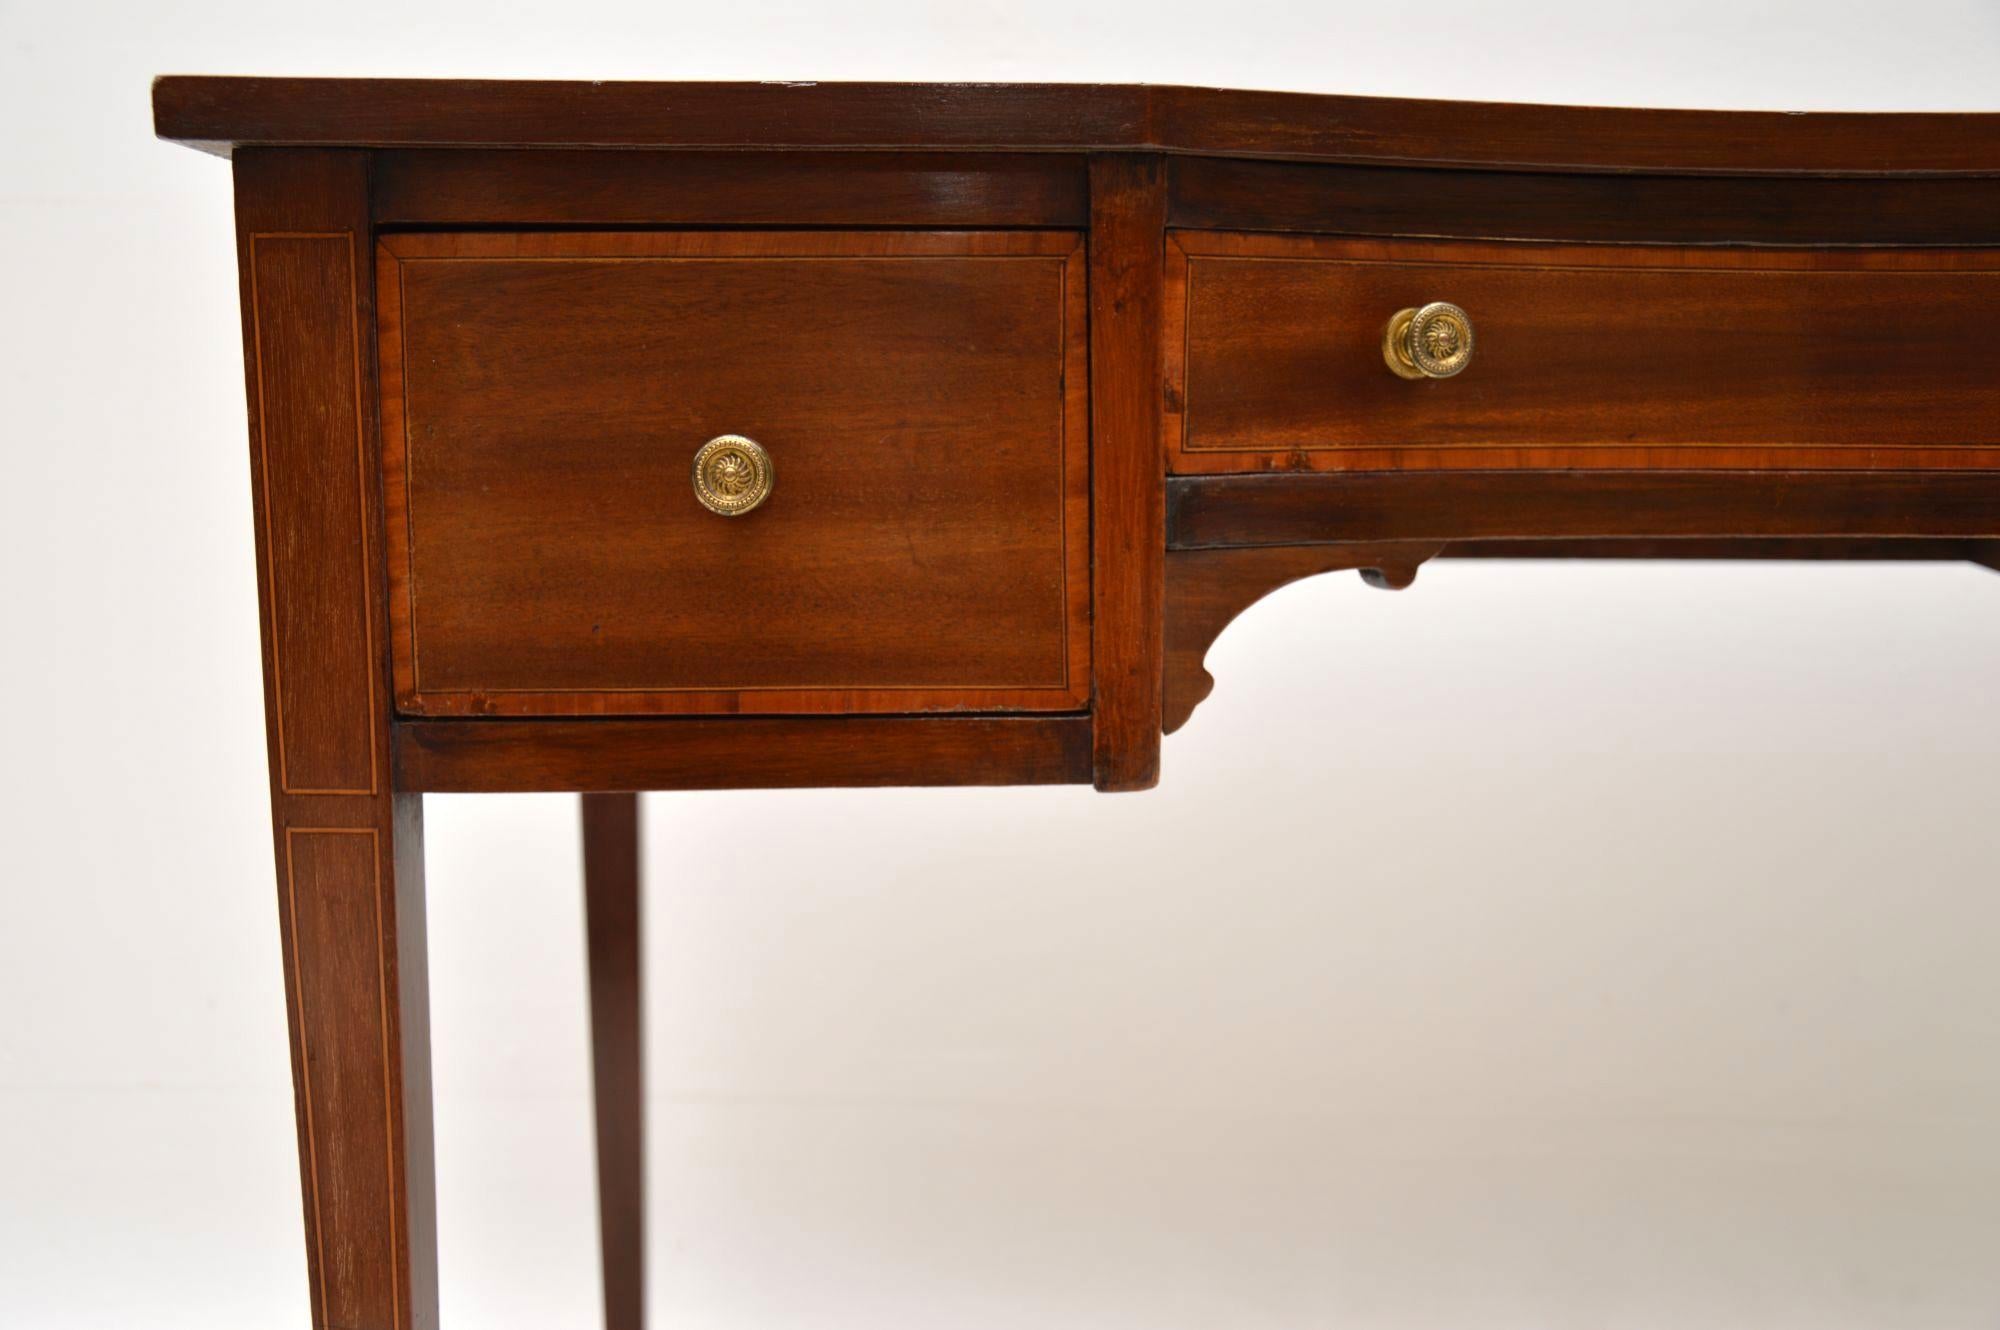 British Antique Edwardian Inlaid Mahogany Writing Table / Desk